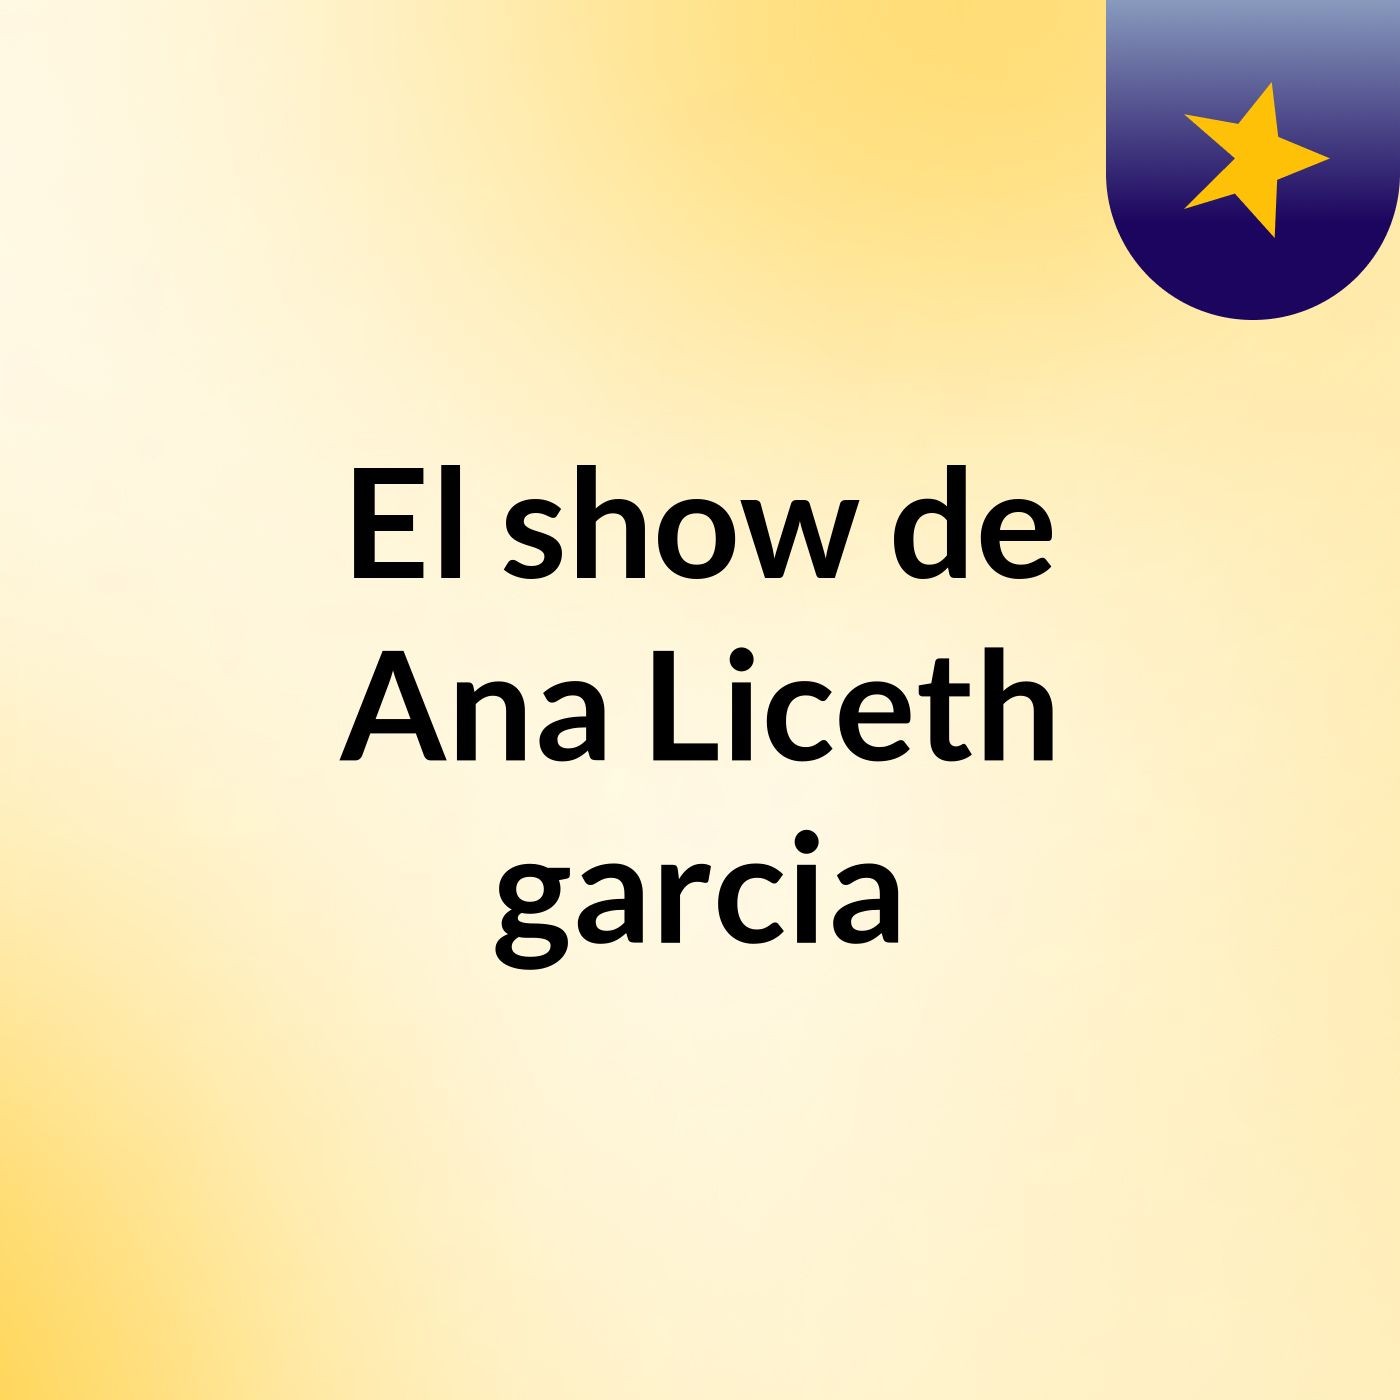 Episodio 6 - El show de Ana Liceth garcia